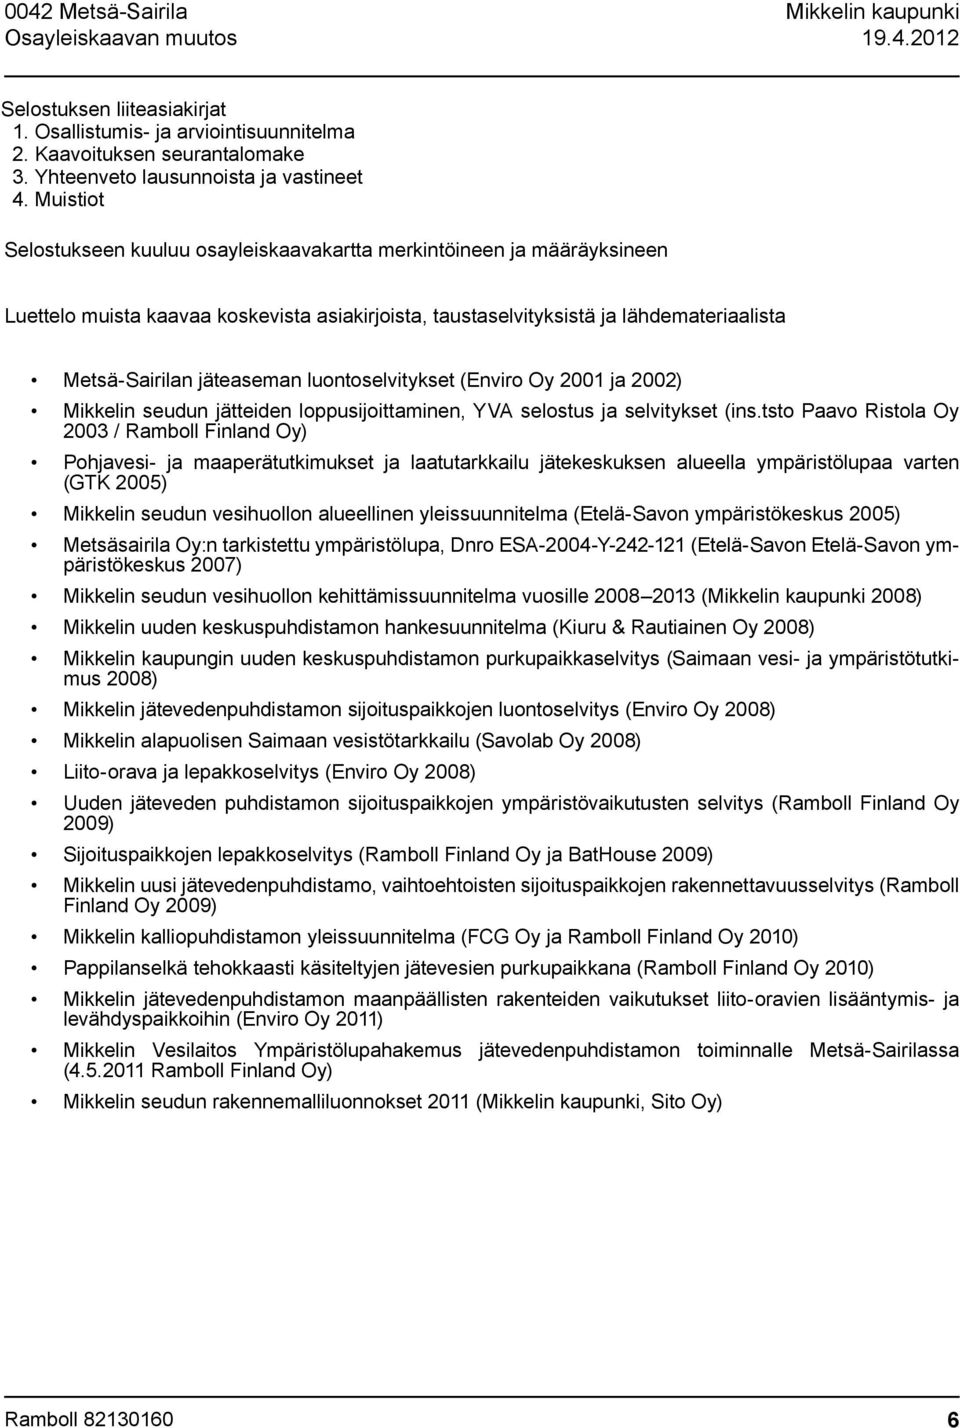 jäteaseman luontoselvitykset (Enviro Oy 2001 ja 2002) Mikkelin seudun jätteiden loppusijoittaminen, YVA selostus ja selvitykset (ins.